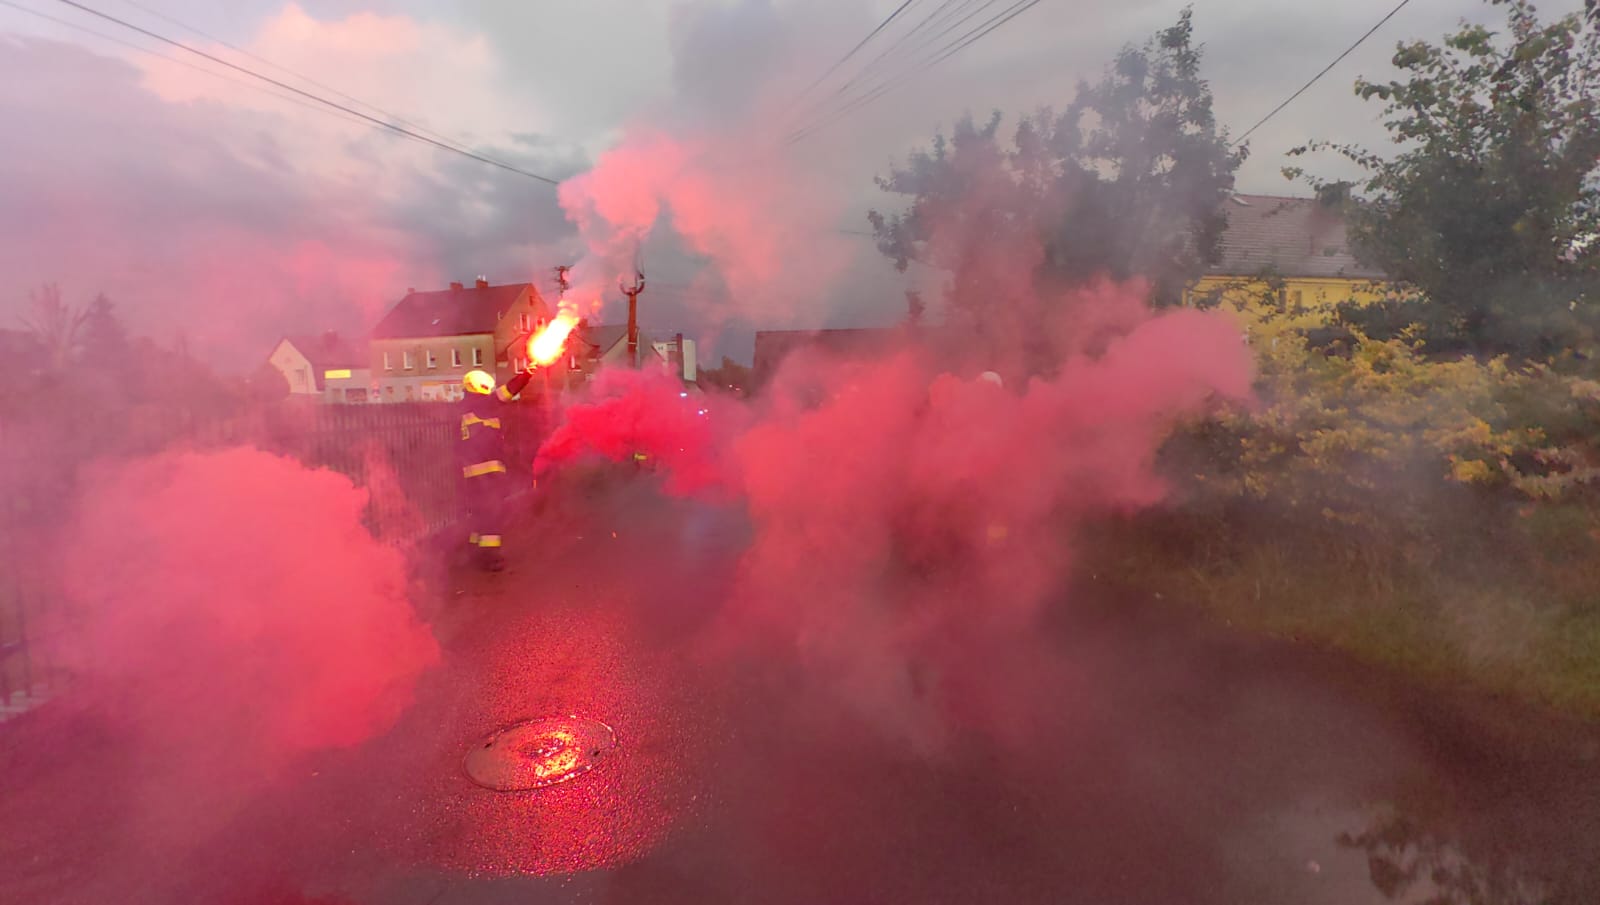 Zdjęcie Strażaków z odpalonymi czerwonymi racami